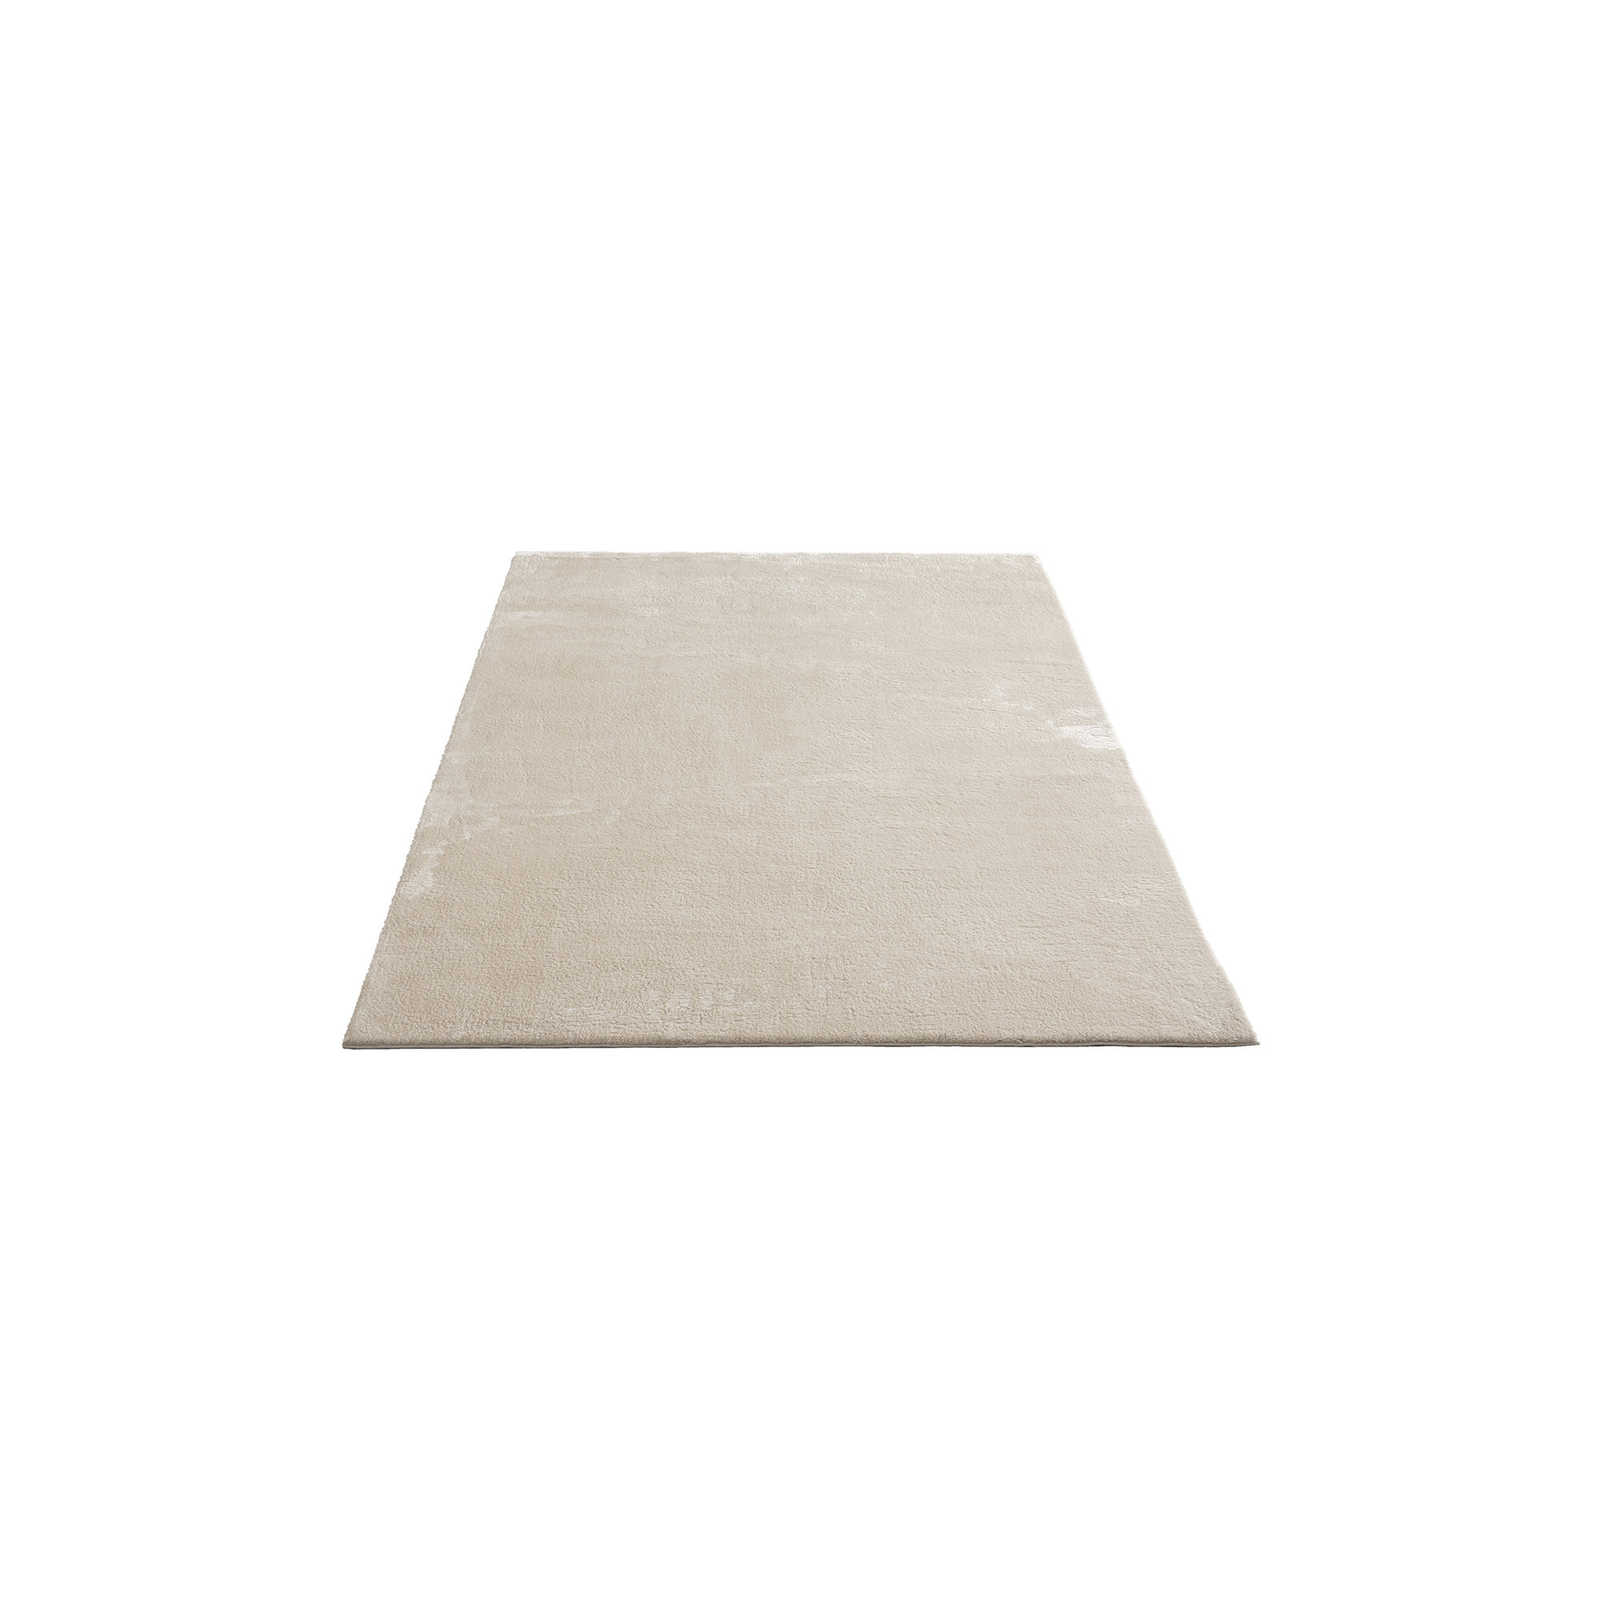 Soft high pile carpet in beige - 200 x 140 cm
